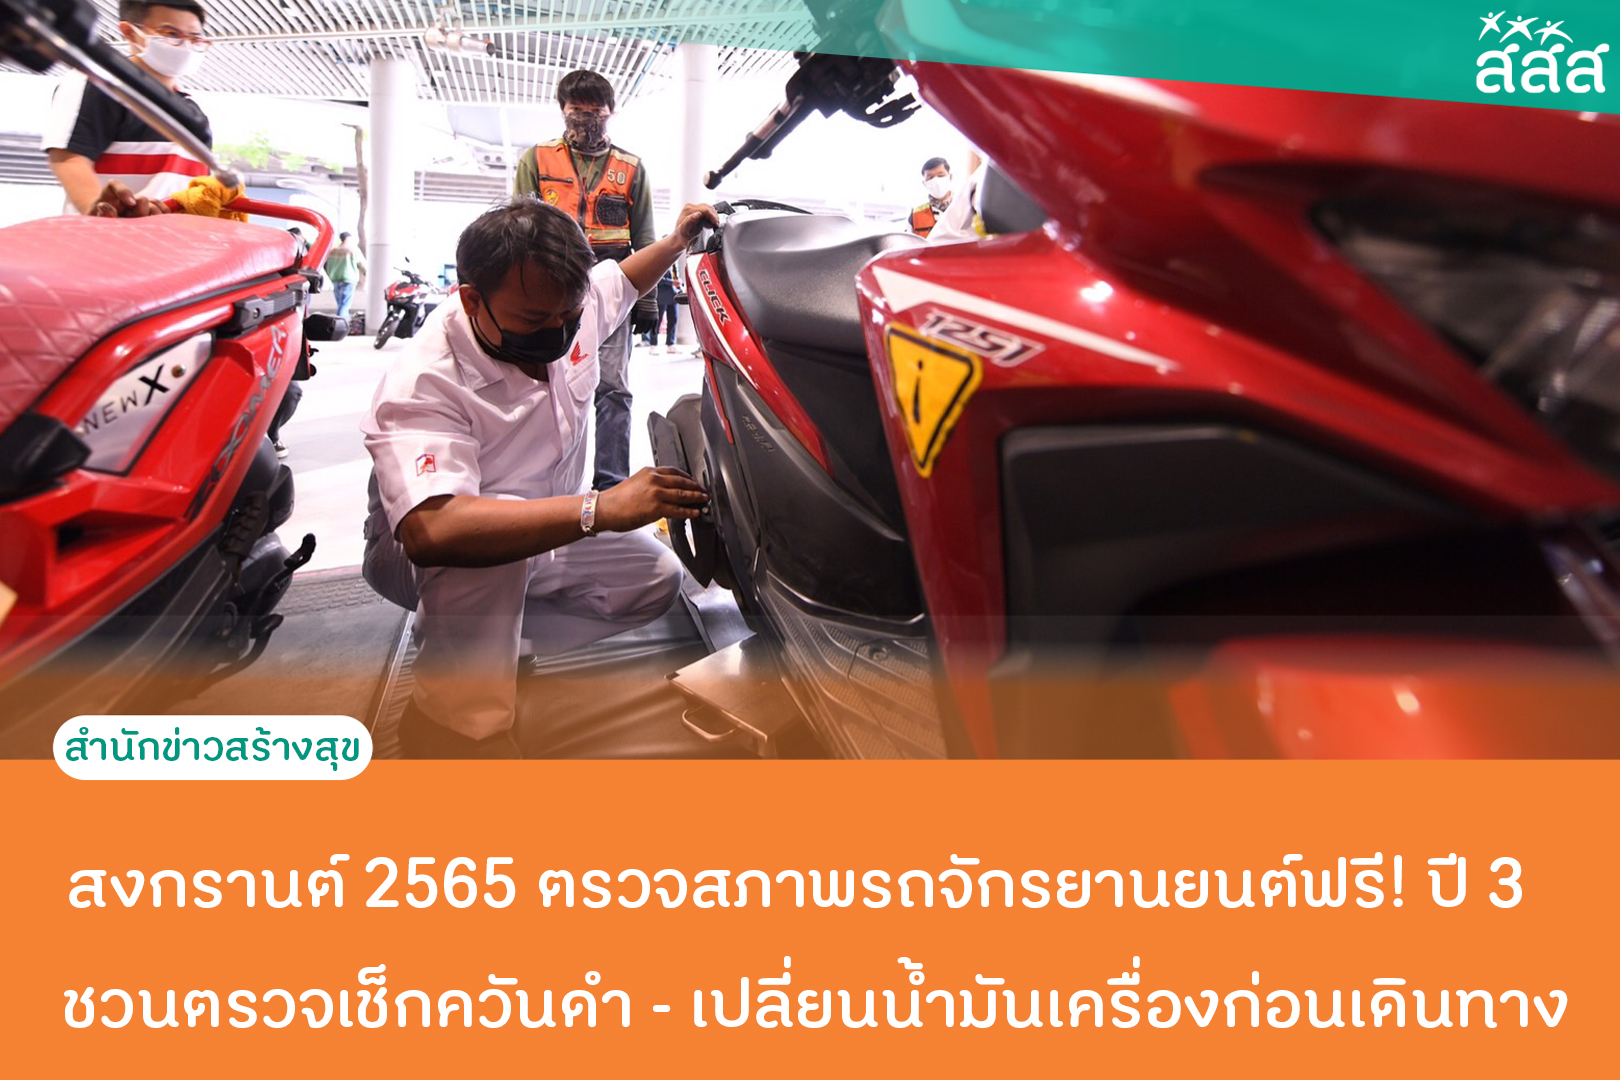 สงกรานต์ 2565 ตรวจสภาพรถจักรยานยนต์ ฟรี! ปี 3 ชวนตรวจเช็กควันดำ - เปลี่ยนน้ำมันเครื่องก่อนเดินทาง thaihealth